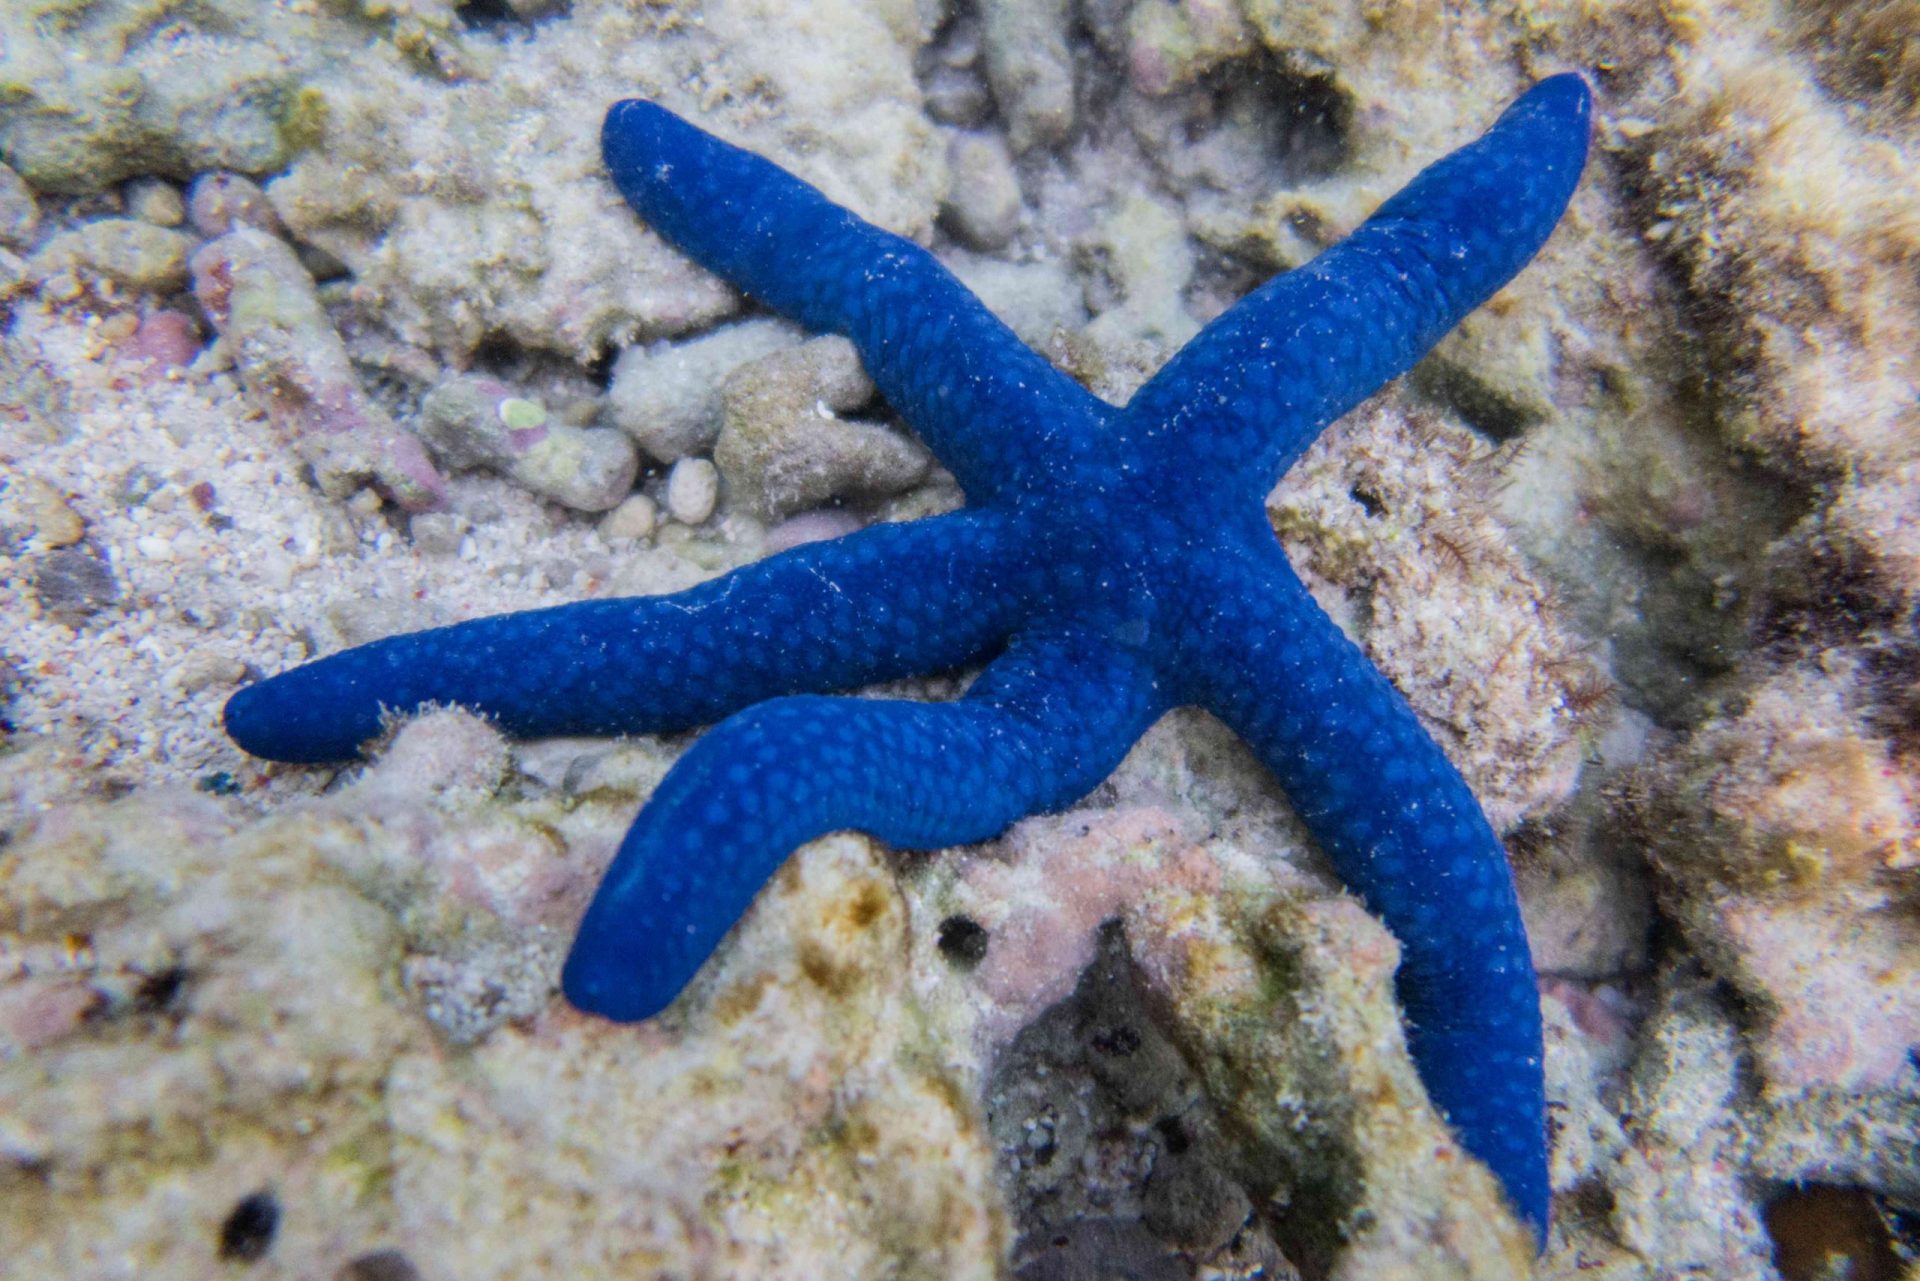 Una Linckia laevigata azul descansando sobre un coral gris